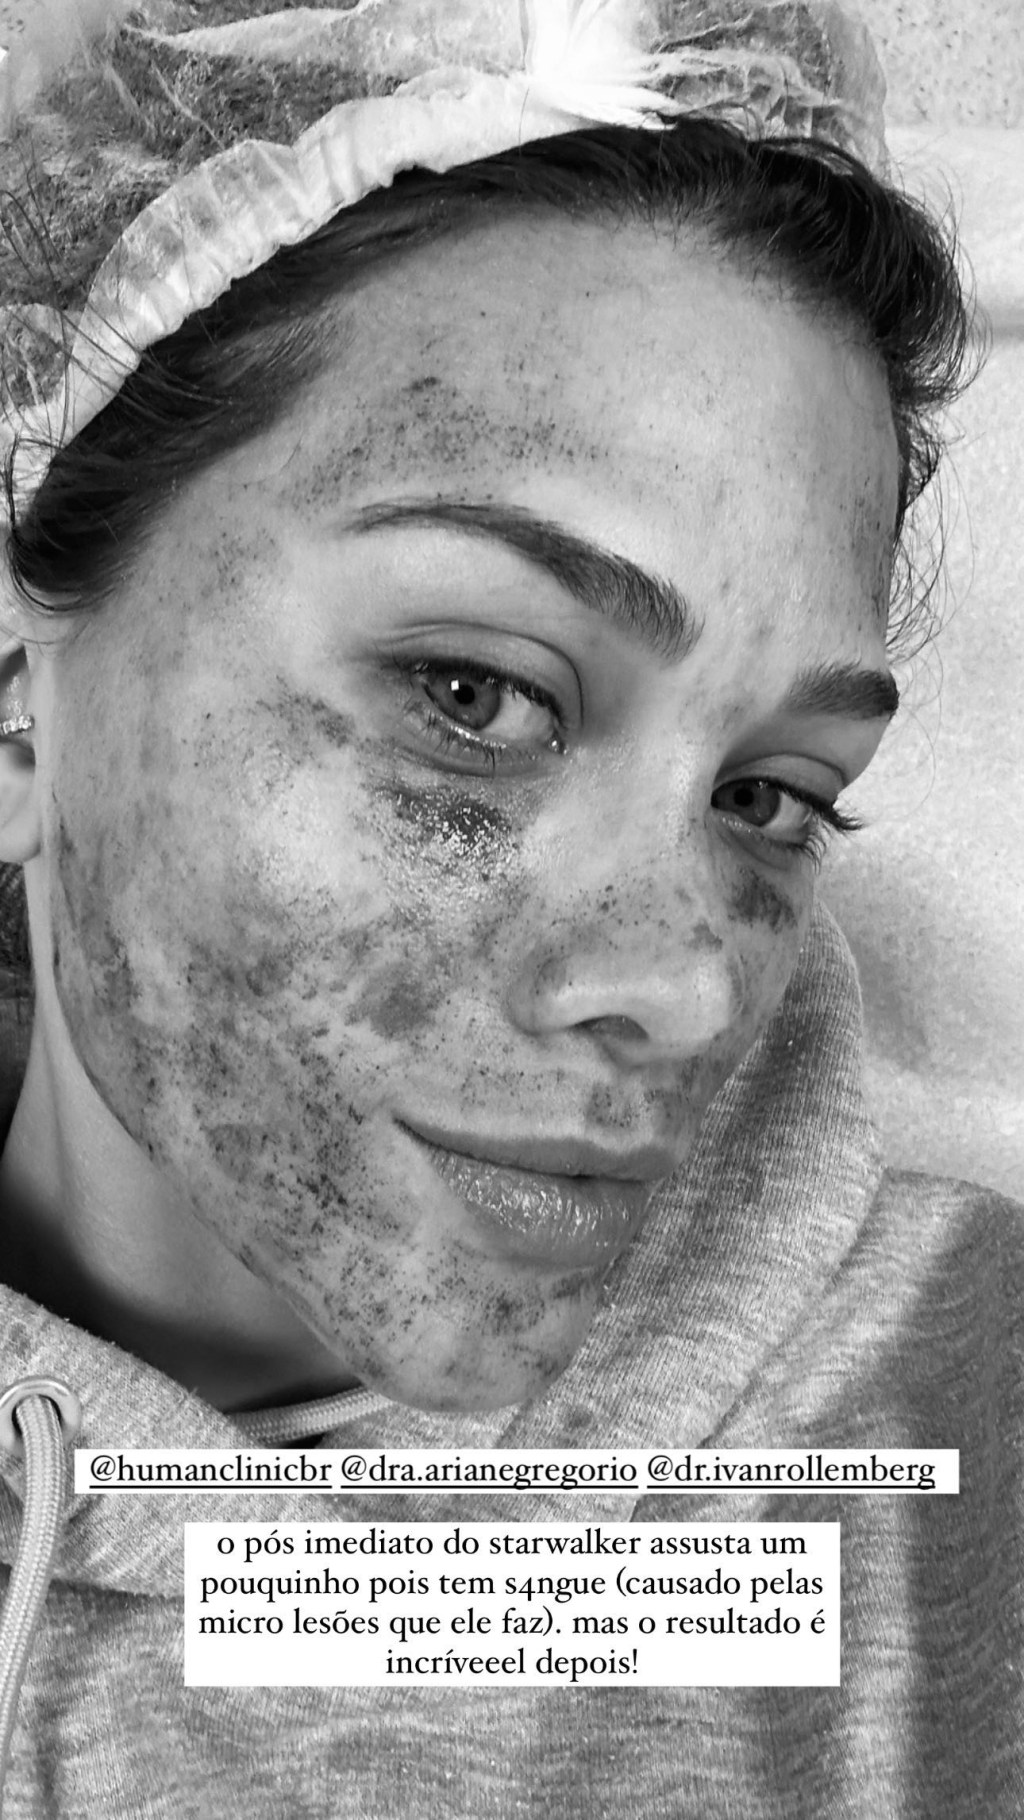 Flavia Pavanelli com o rosto machucado após realização de laser